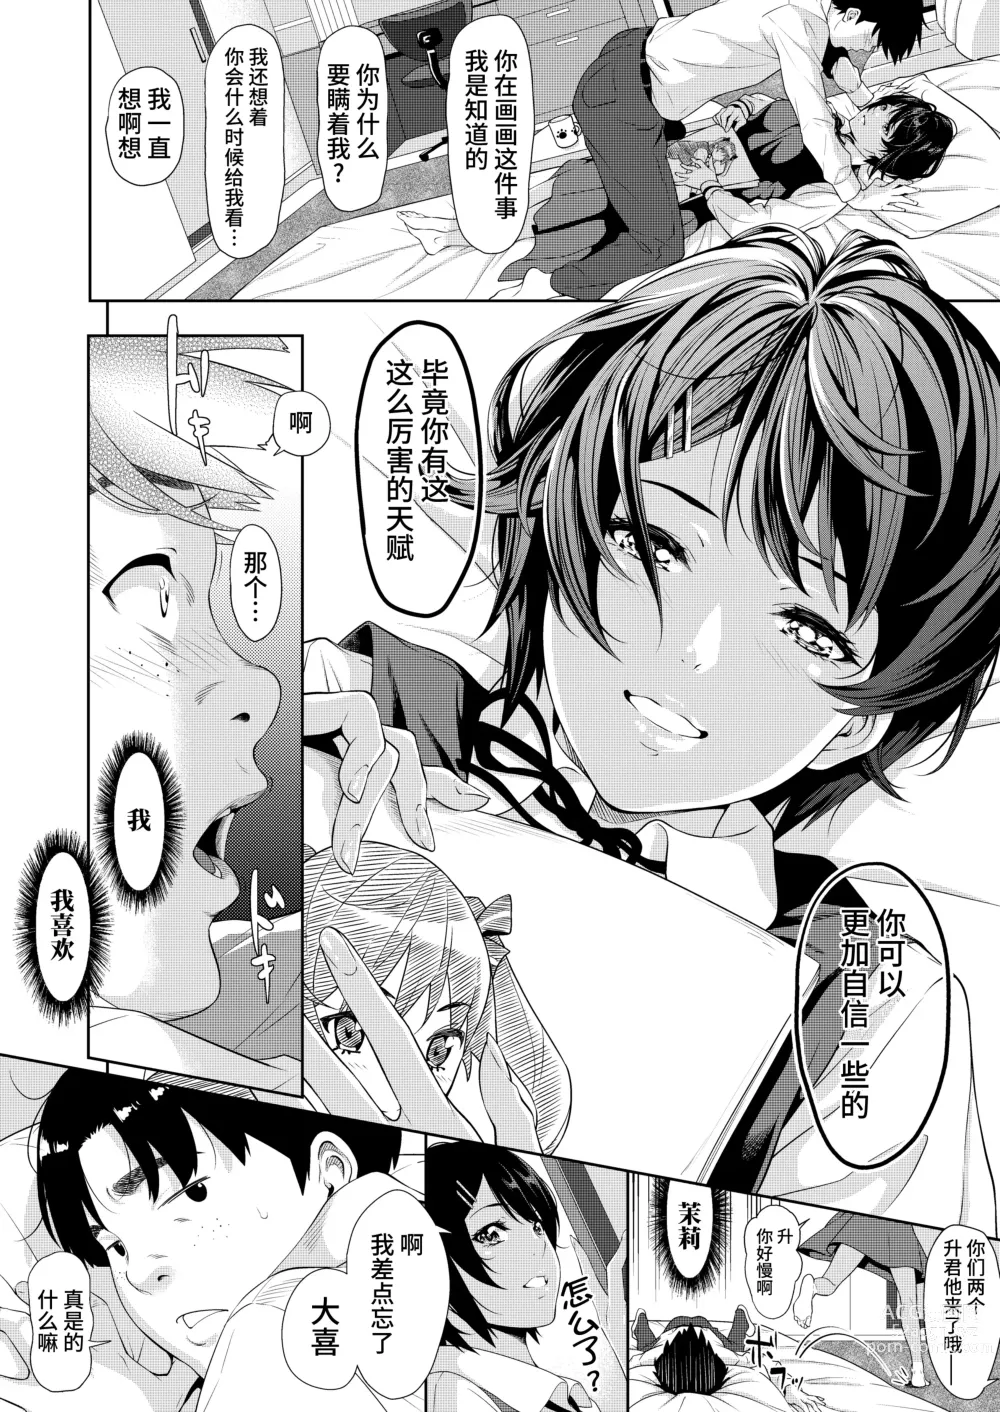 Page 4 of manga 僕たちのゴールライン